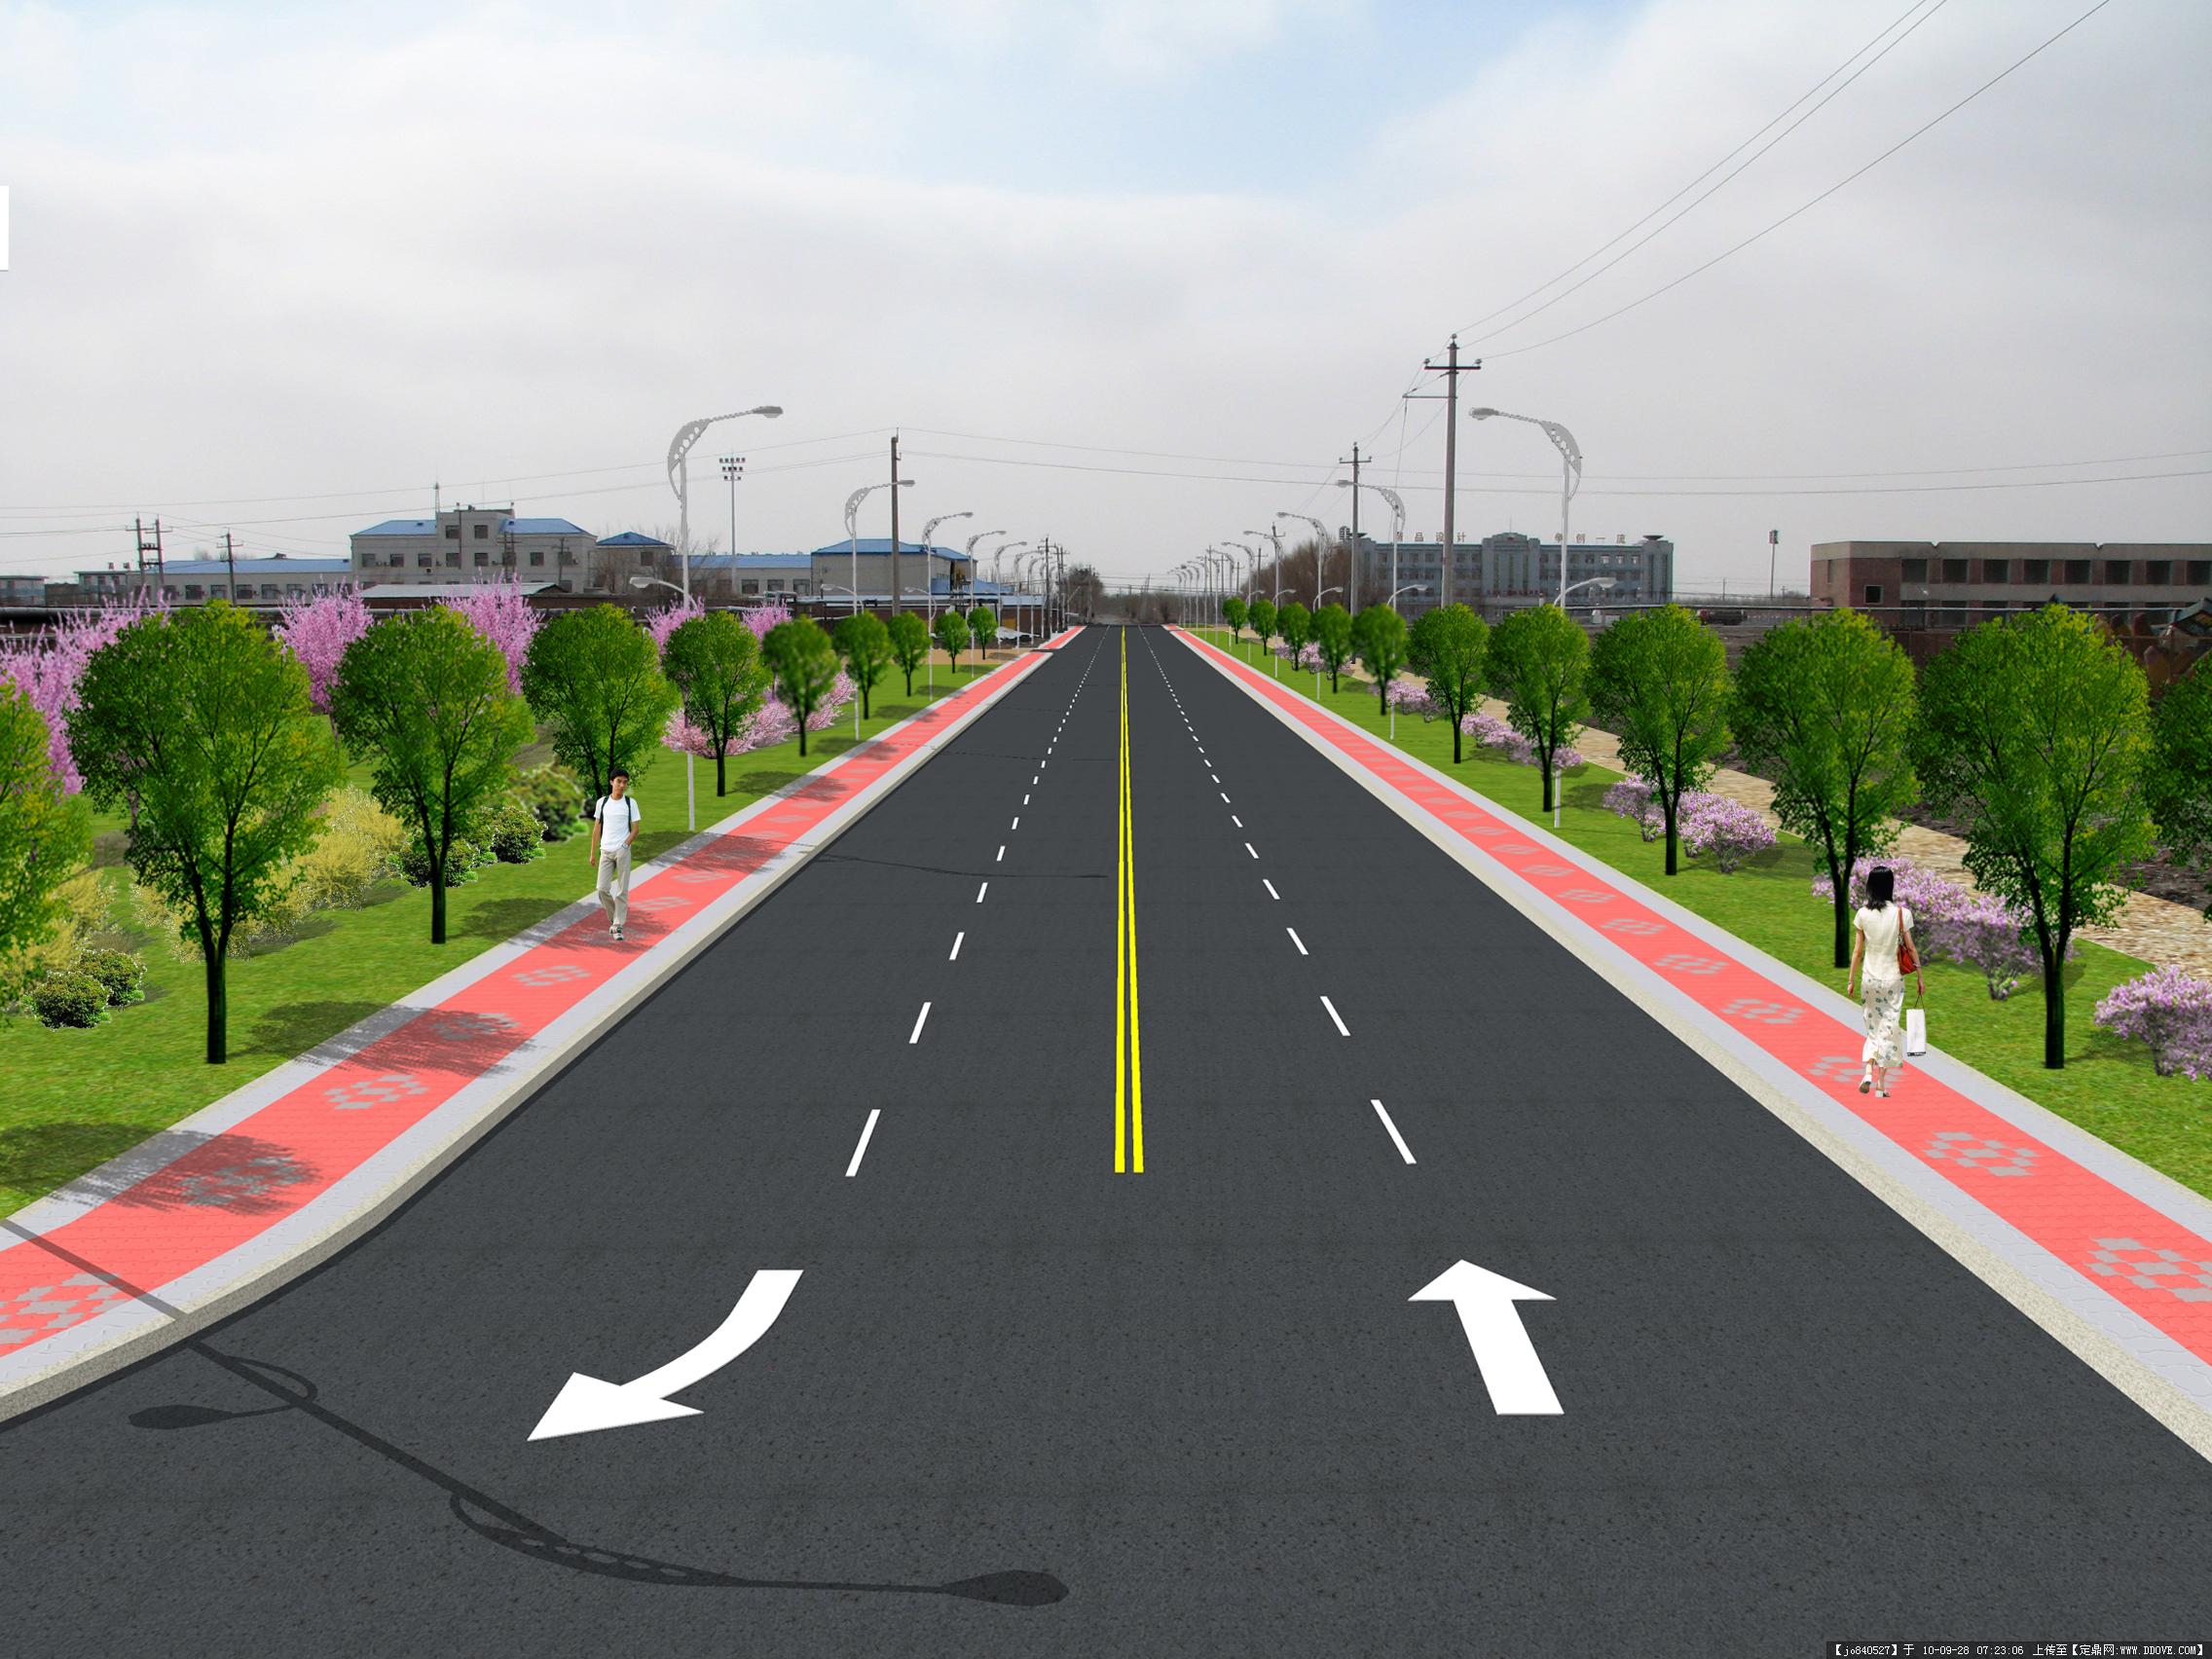 嵊州市农村公路提升改造三年行动规划 - 业绩 - 华汇城市建设服务平台